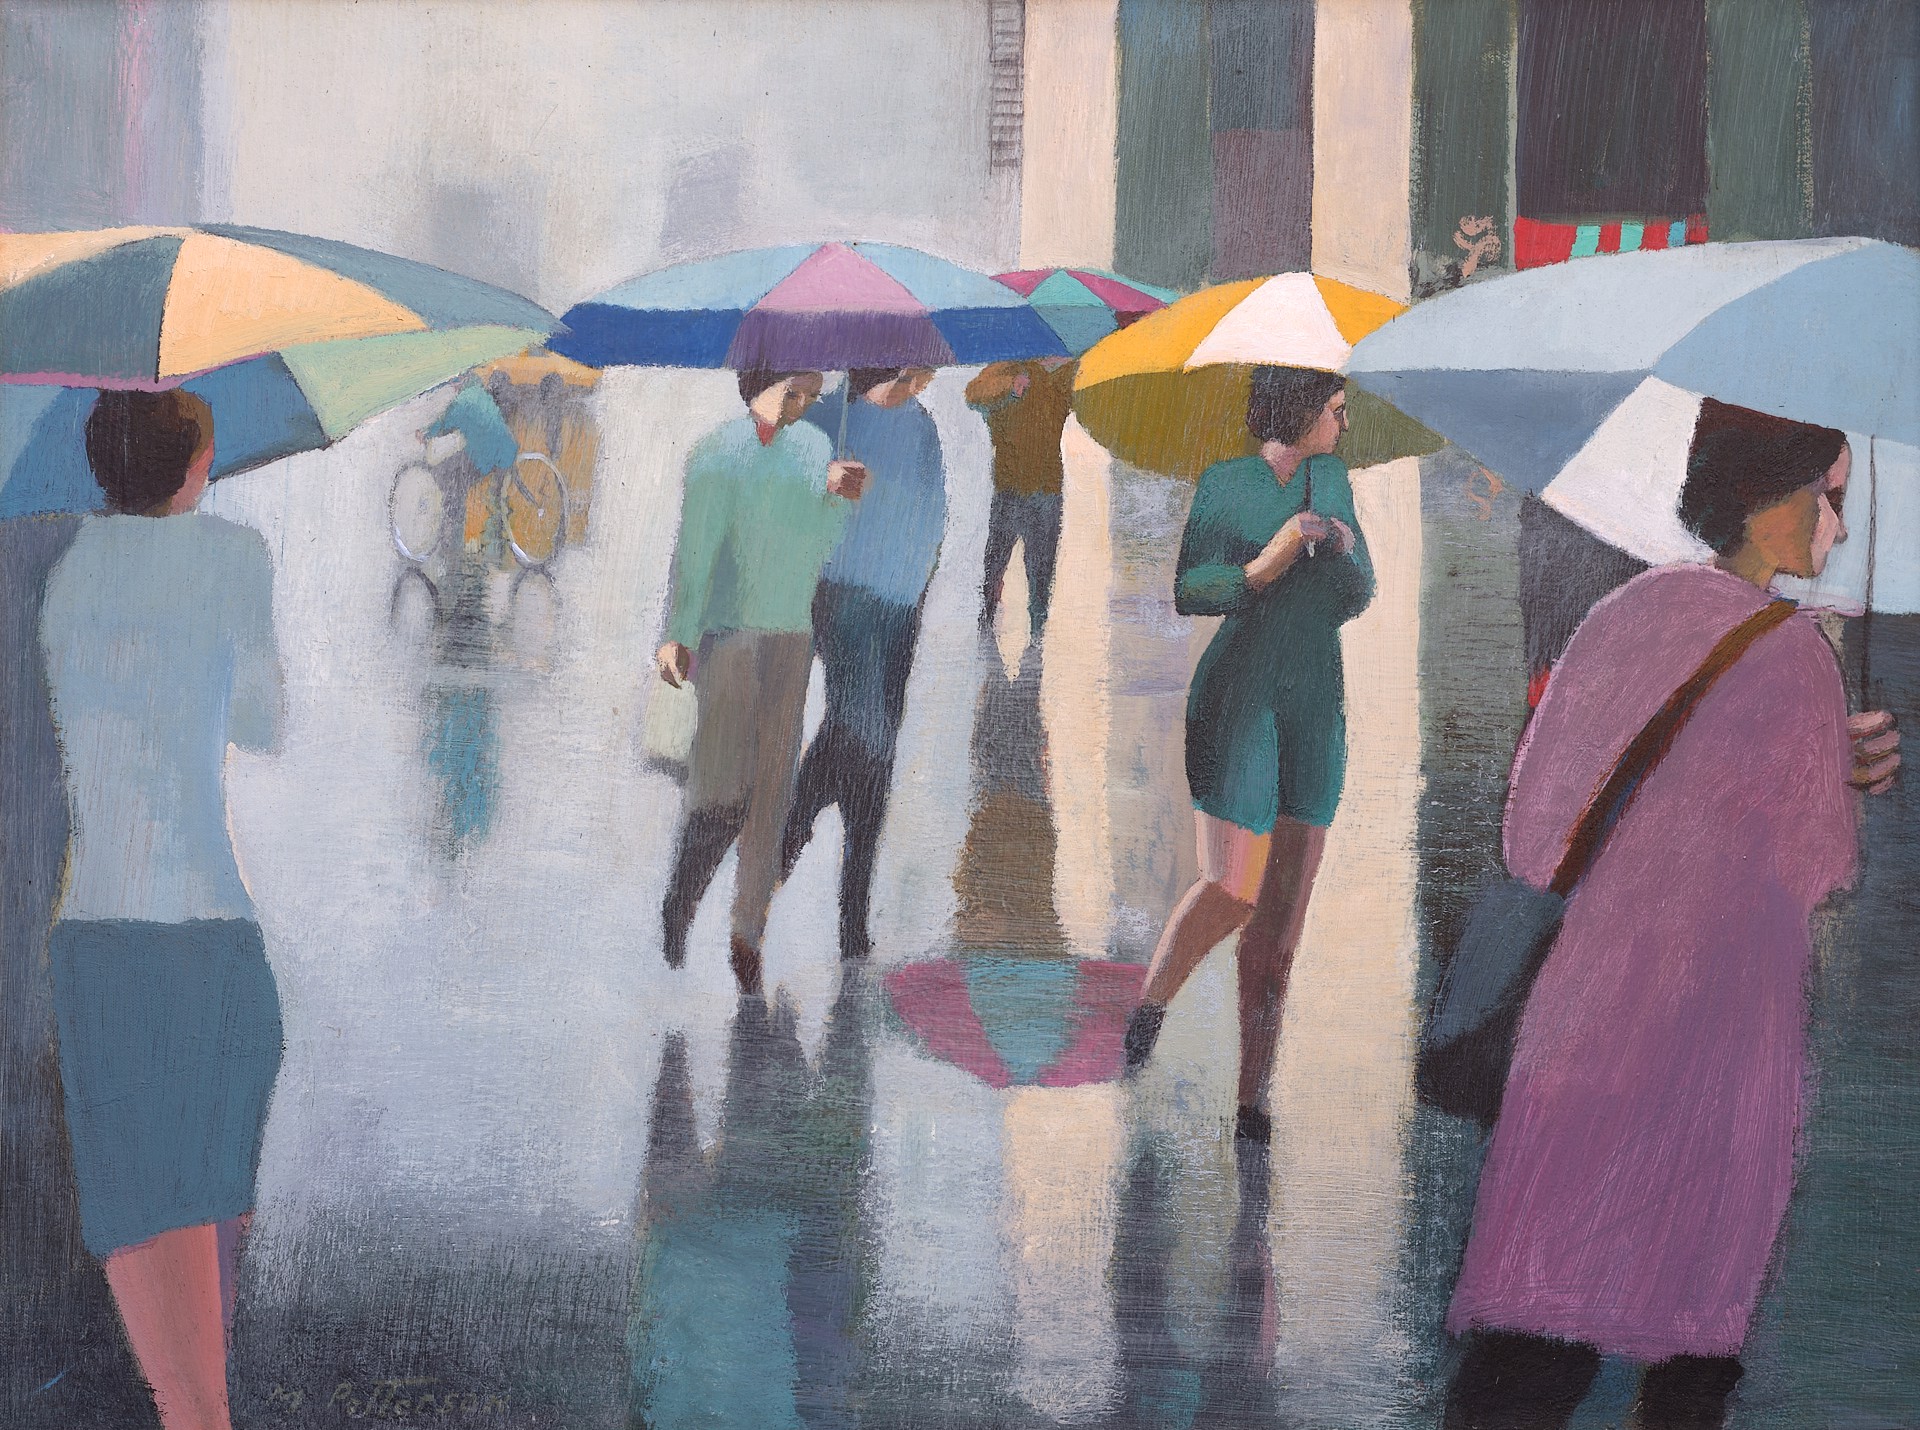 West Village Rain by Michael Patterson